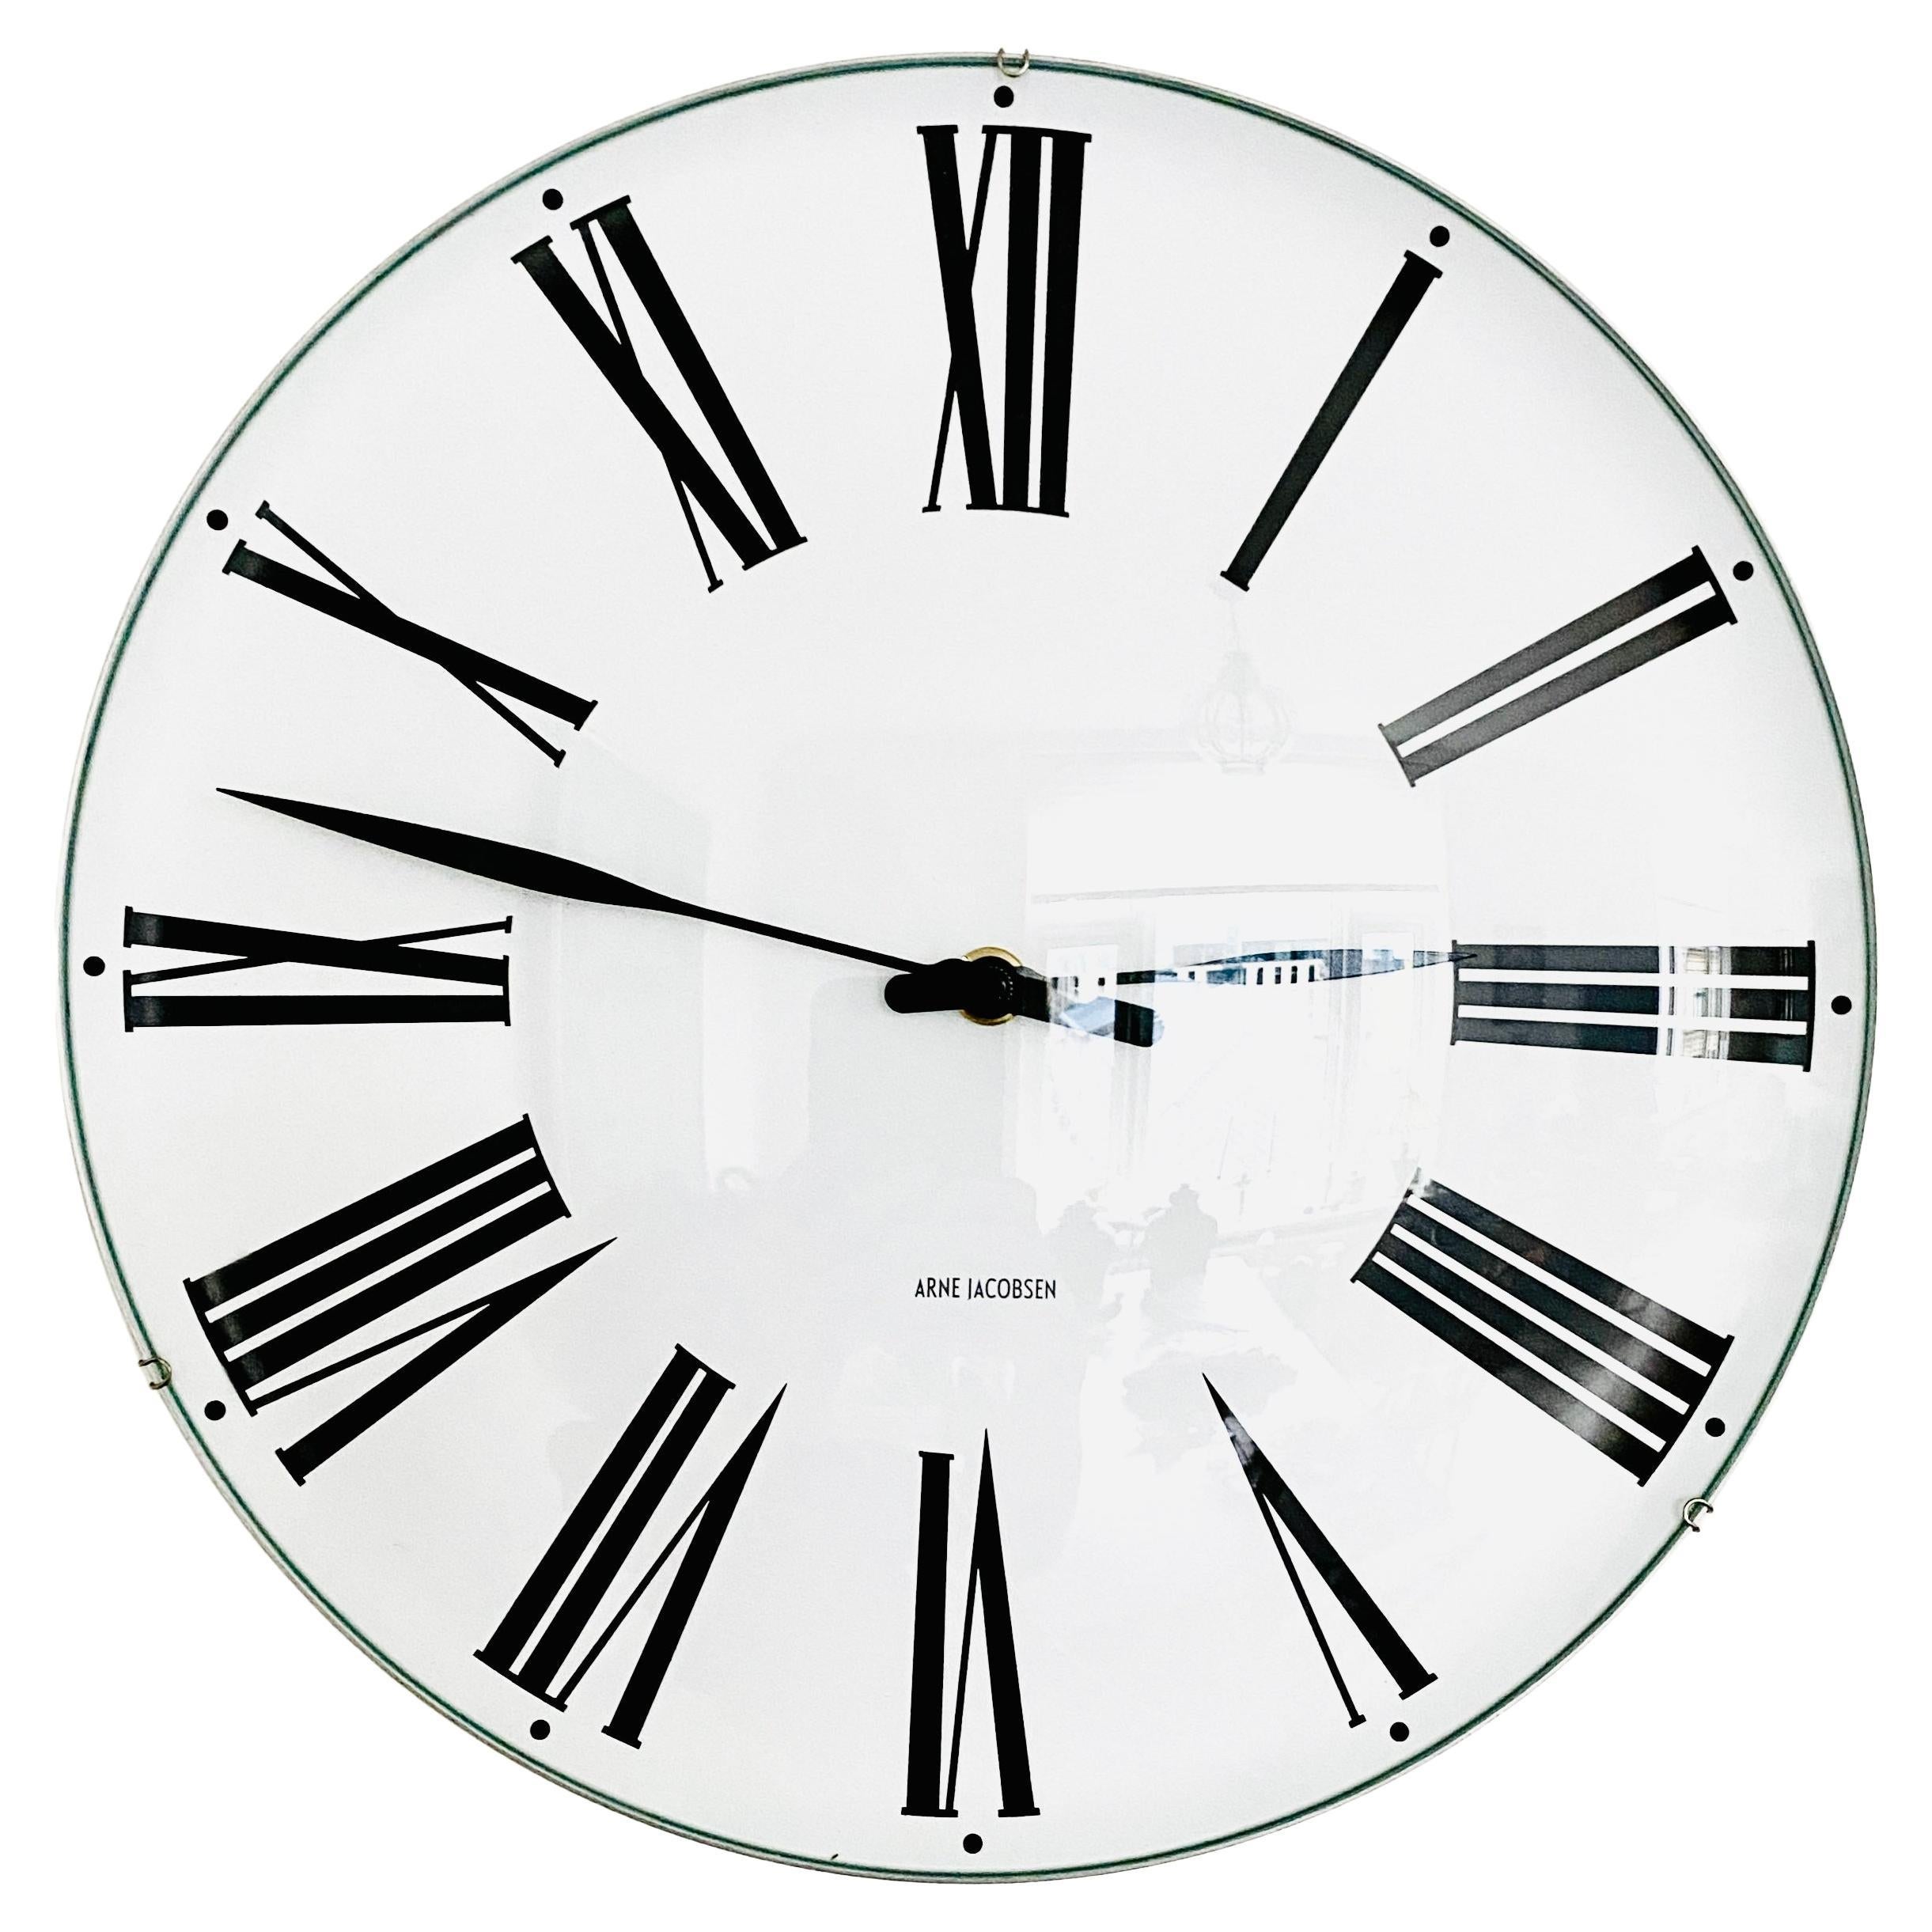 Horloge murale danoise du milieu du siècle dernier modèle Roman d'Arne Jacobsen